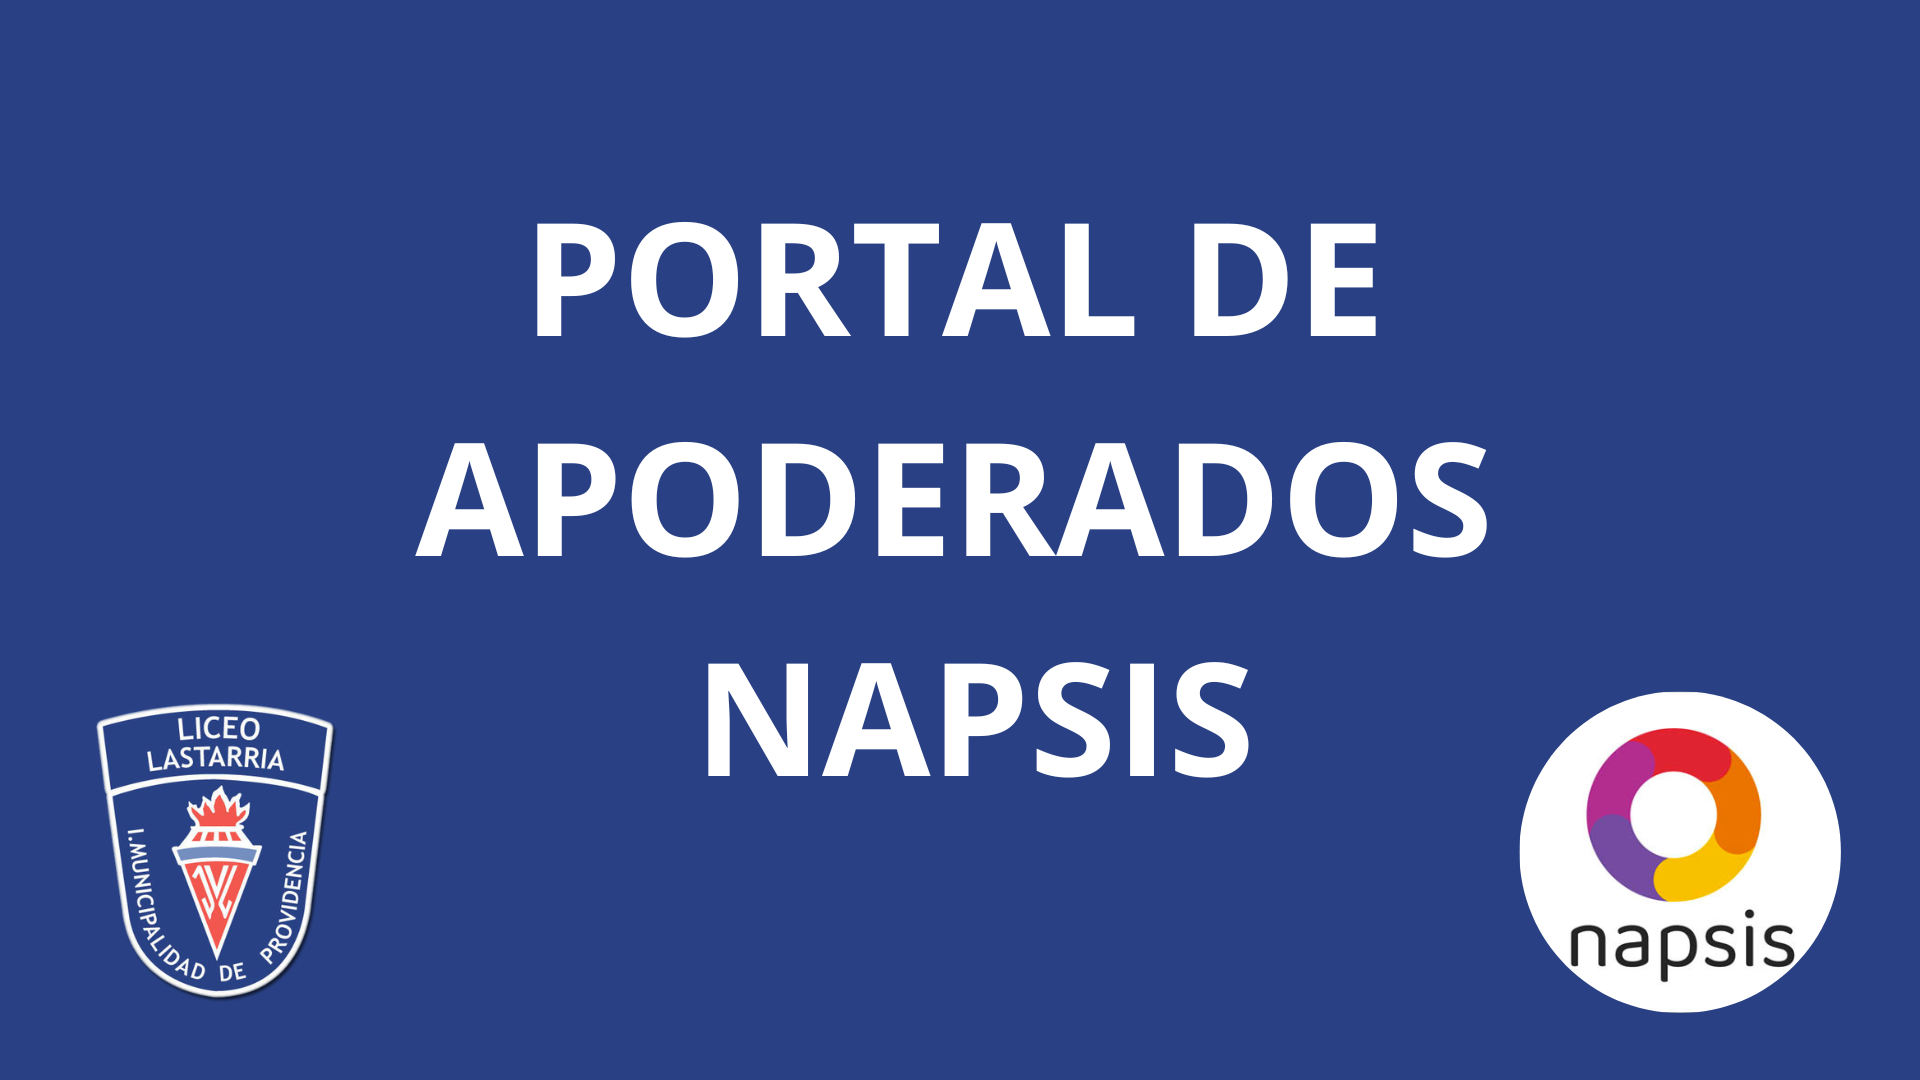 PORTAL DE APODERADOS NAPSIS